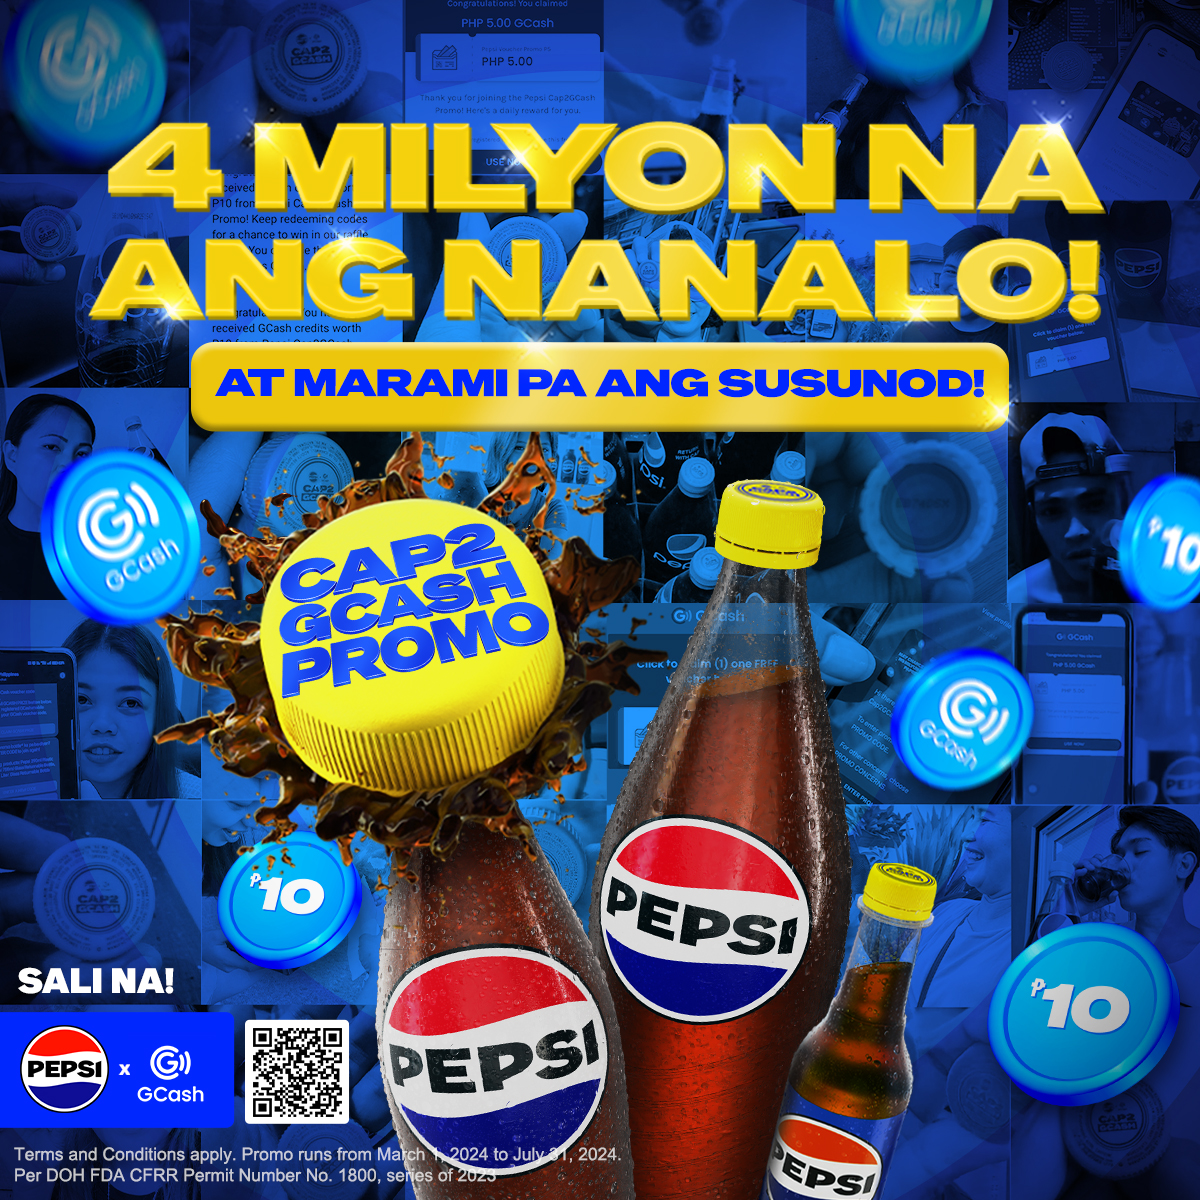 Manifest that 1M! 💰 Marami pa kaming surpresa sa inyo, Pepsi Fam kaya tuloy-tuloy lang ang pag-submit ng entries for a higher chance na manalo sa #PepsiCap2GCashPromo